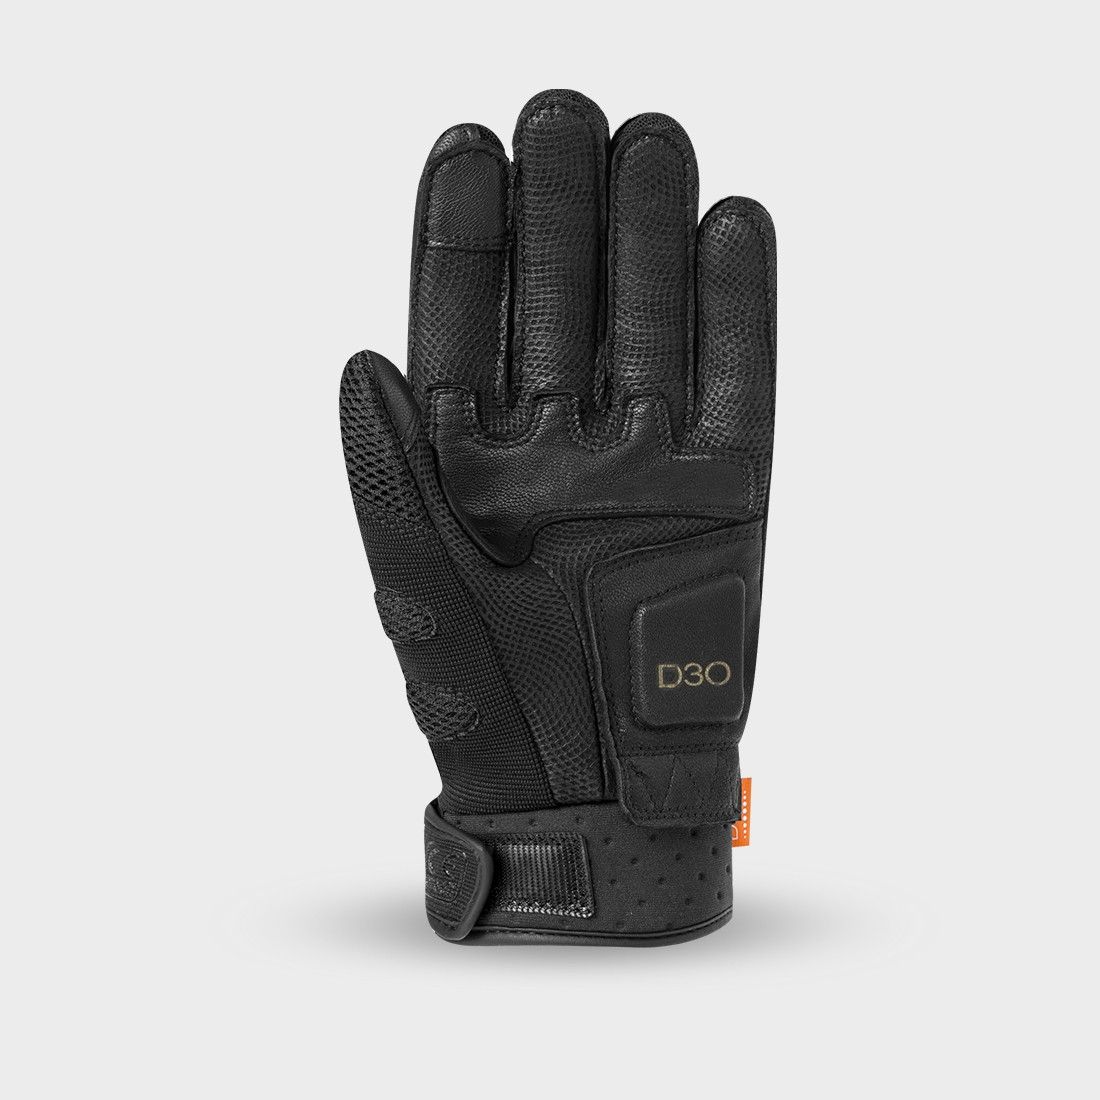 TROOPER 4 - Motorcycle racer gloves